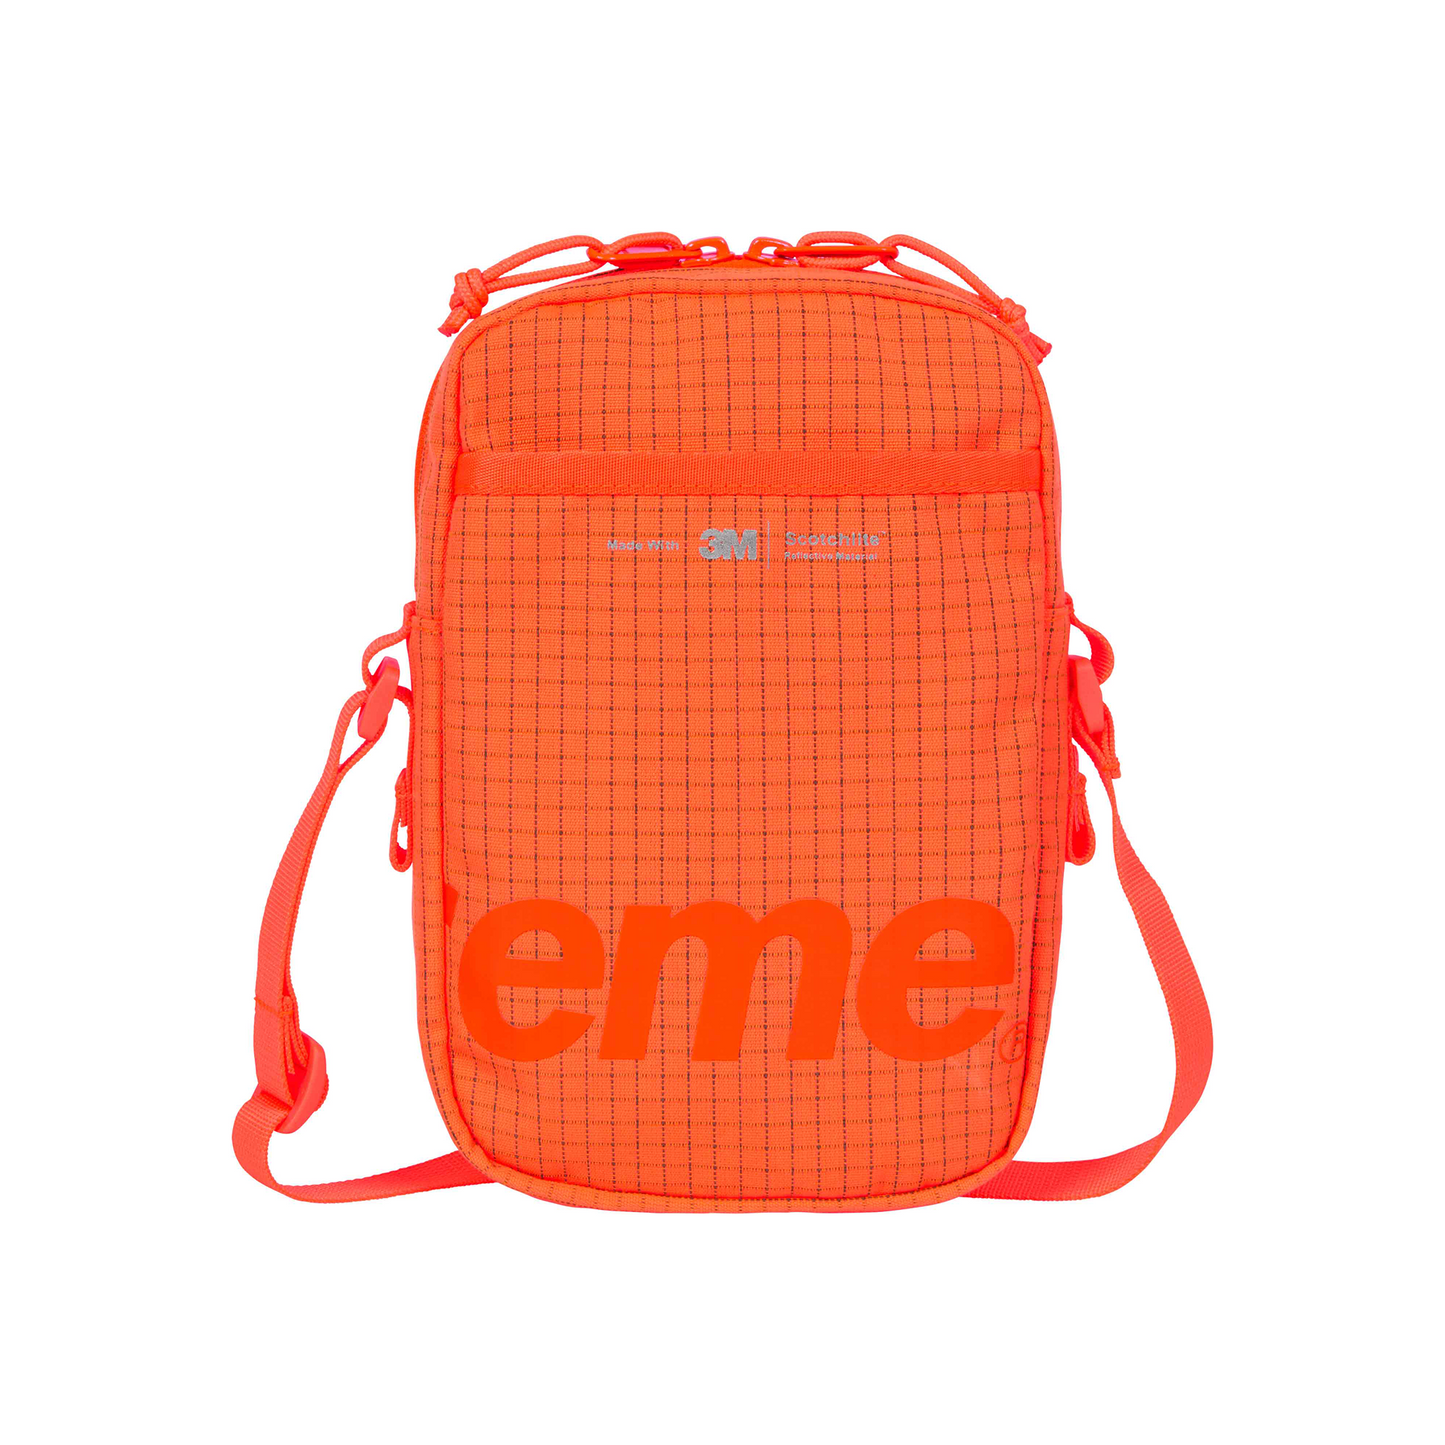 Supreme Shoulder Bag Orange (SS24)